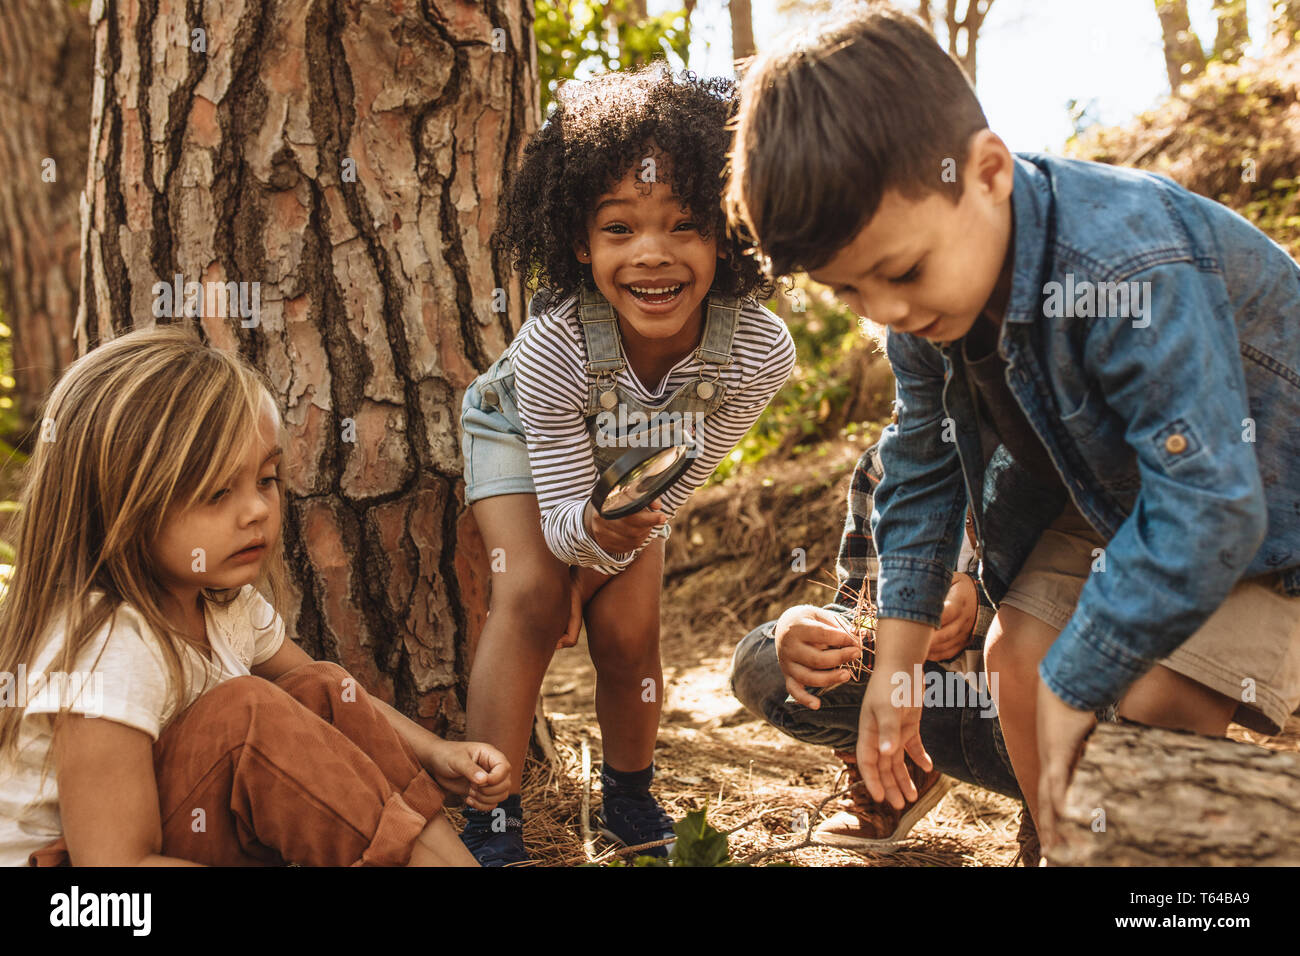 Cute kids con lupa al aire libre. Niños jugando en el bosque con lupa. Foto de stock